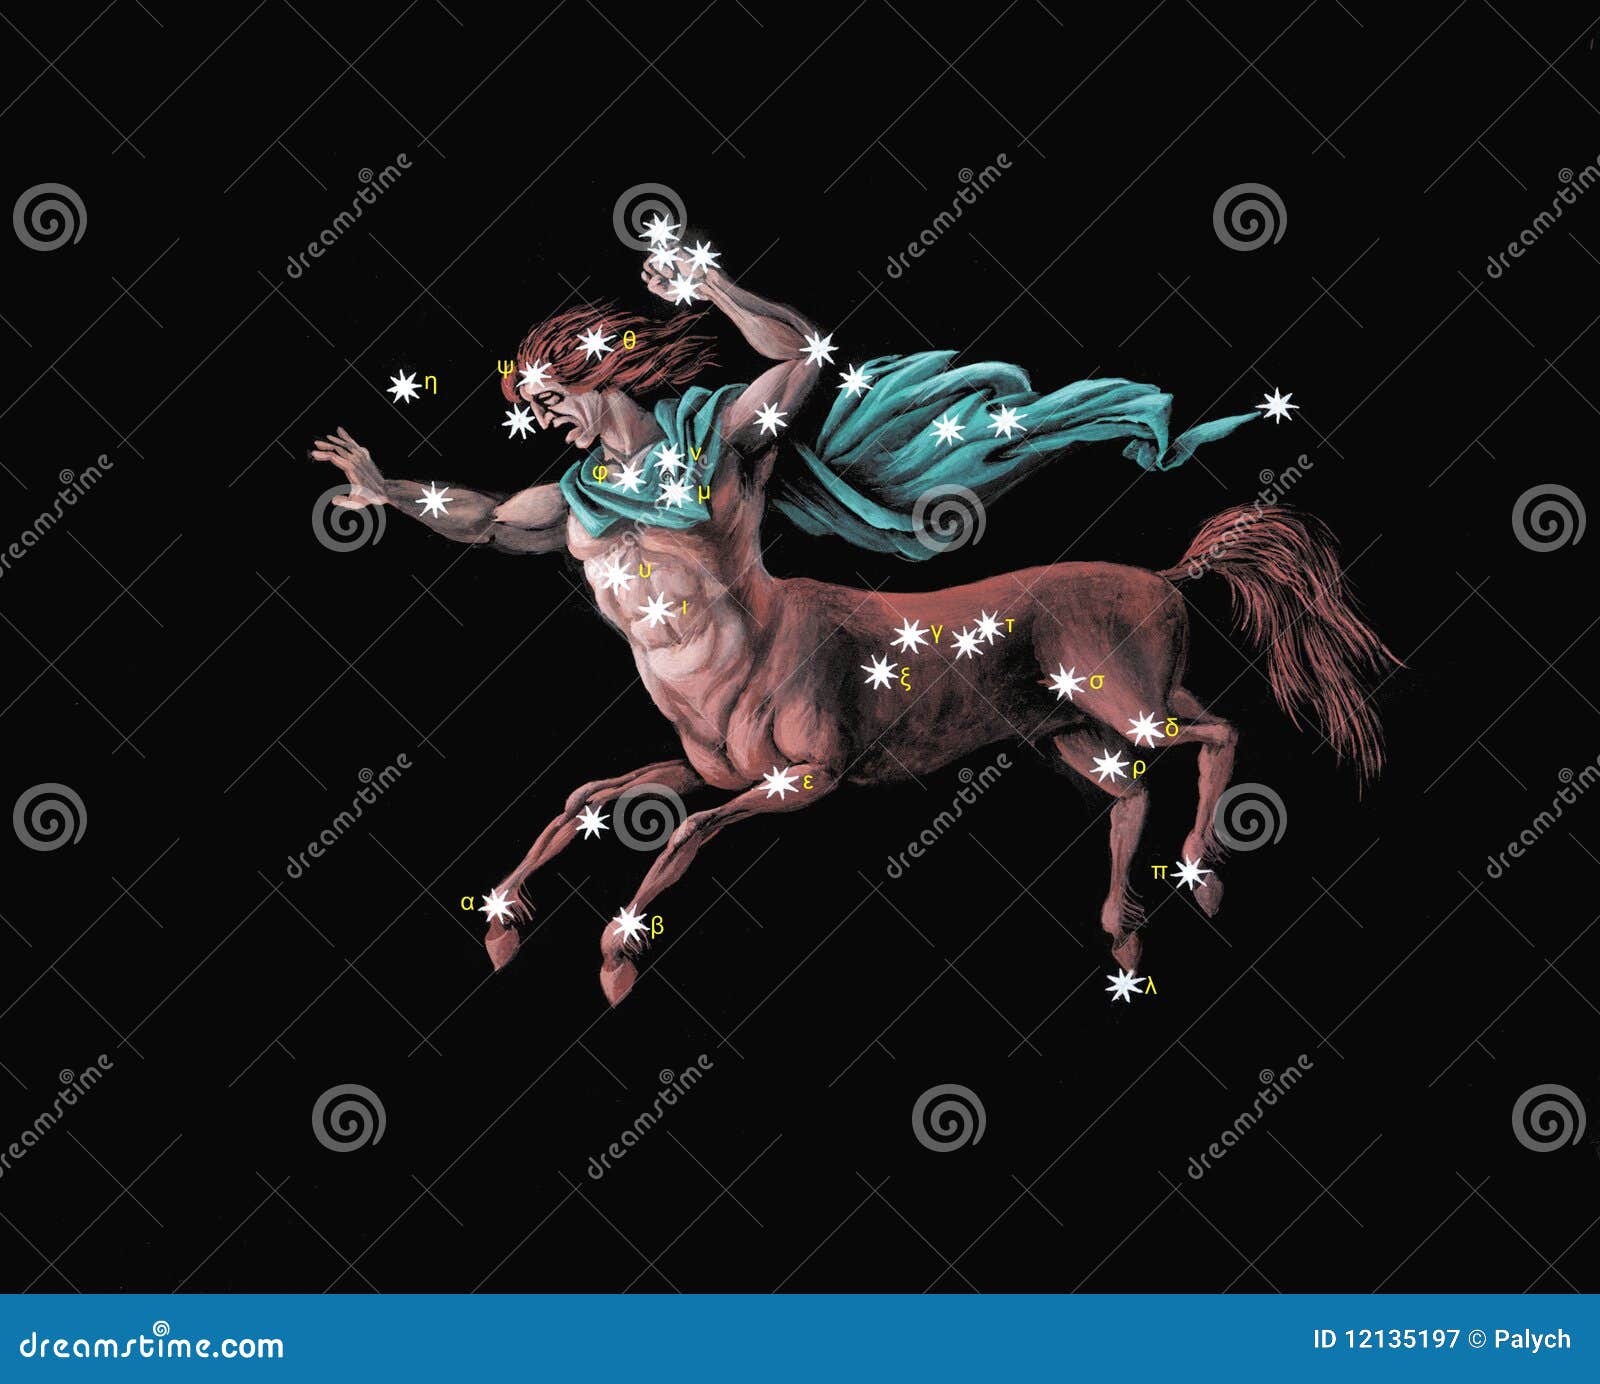 constellation the centaur